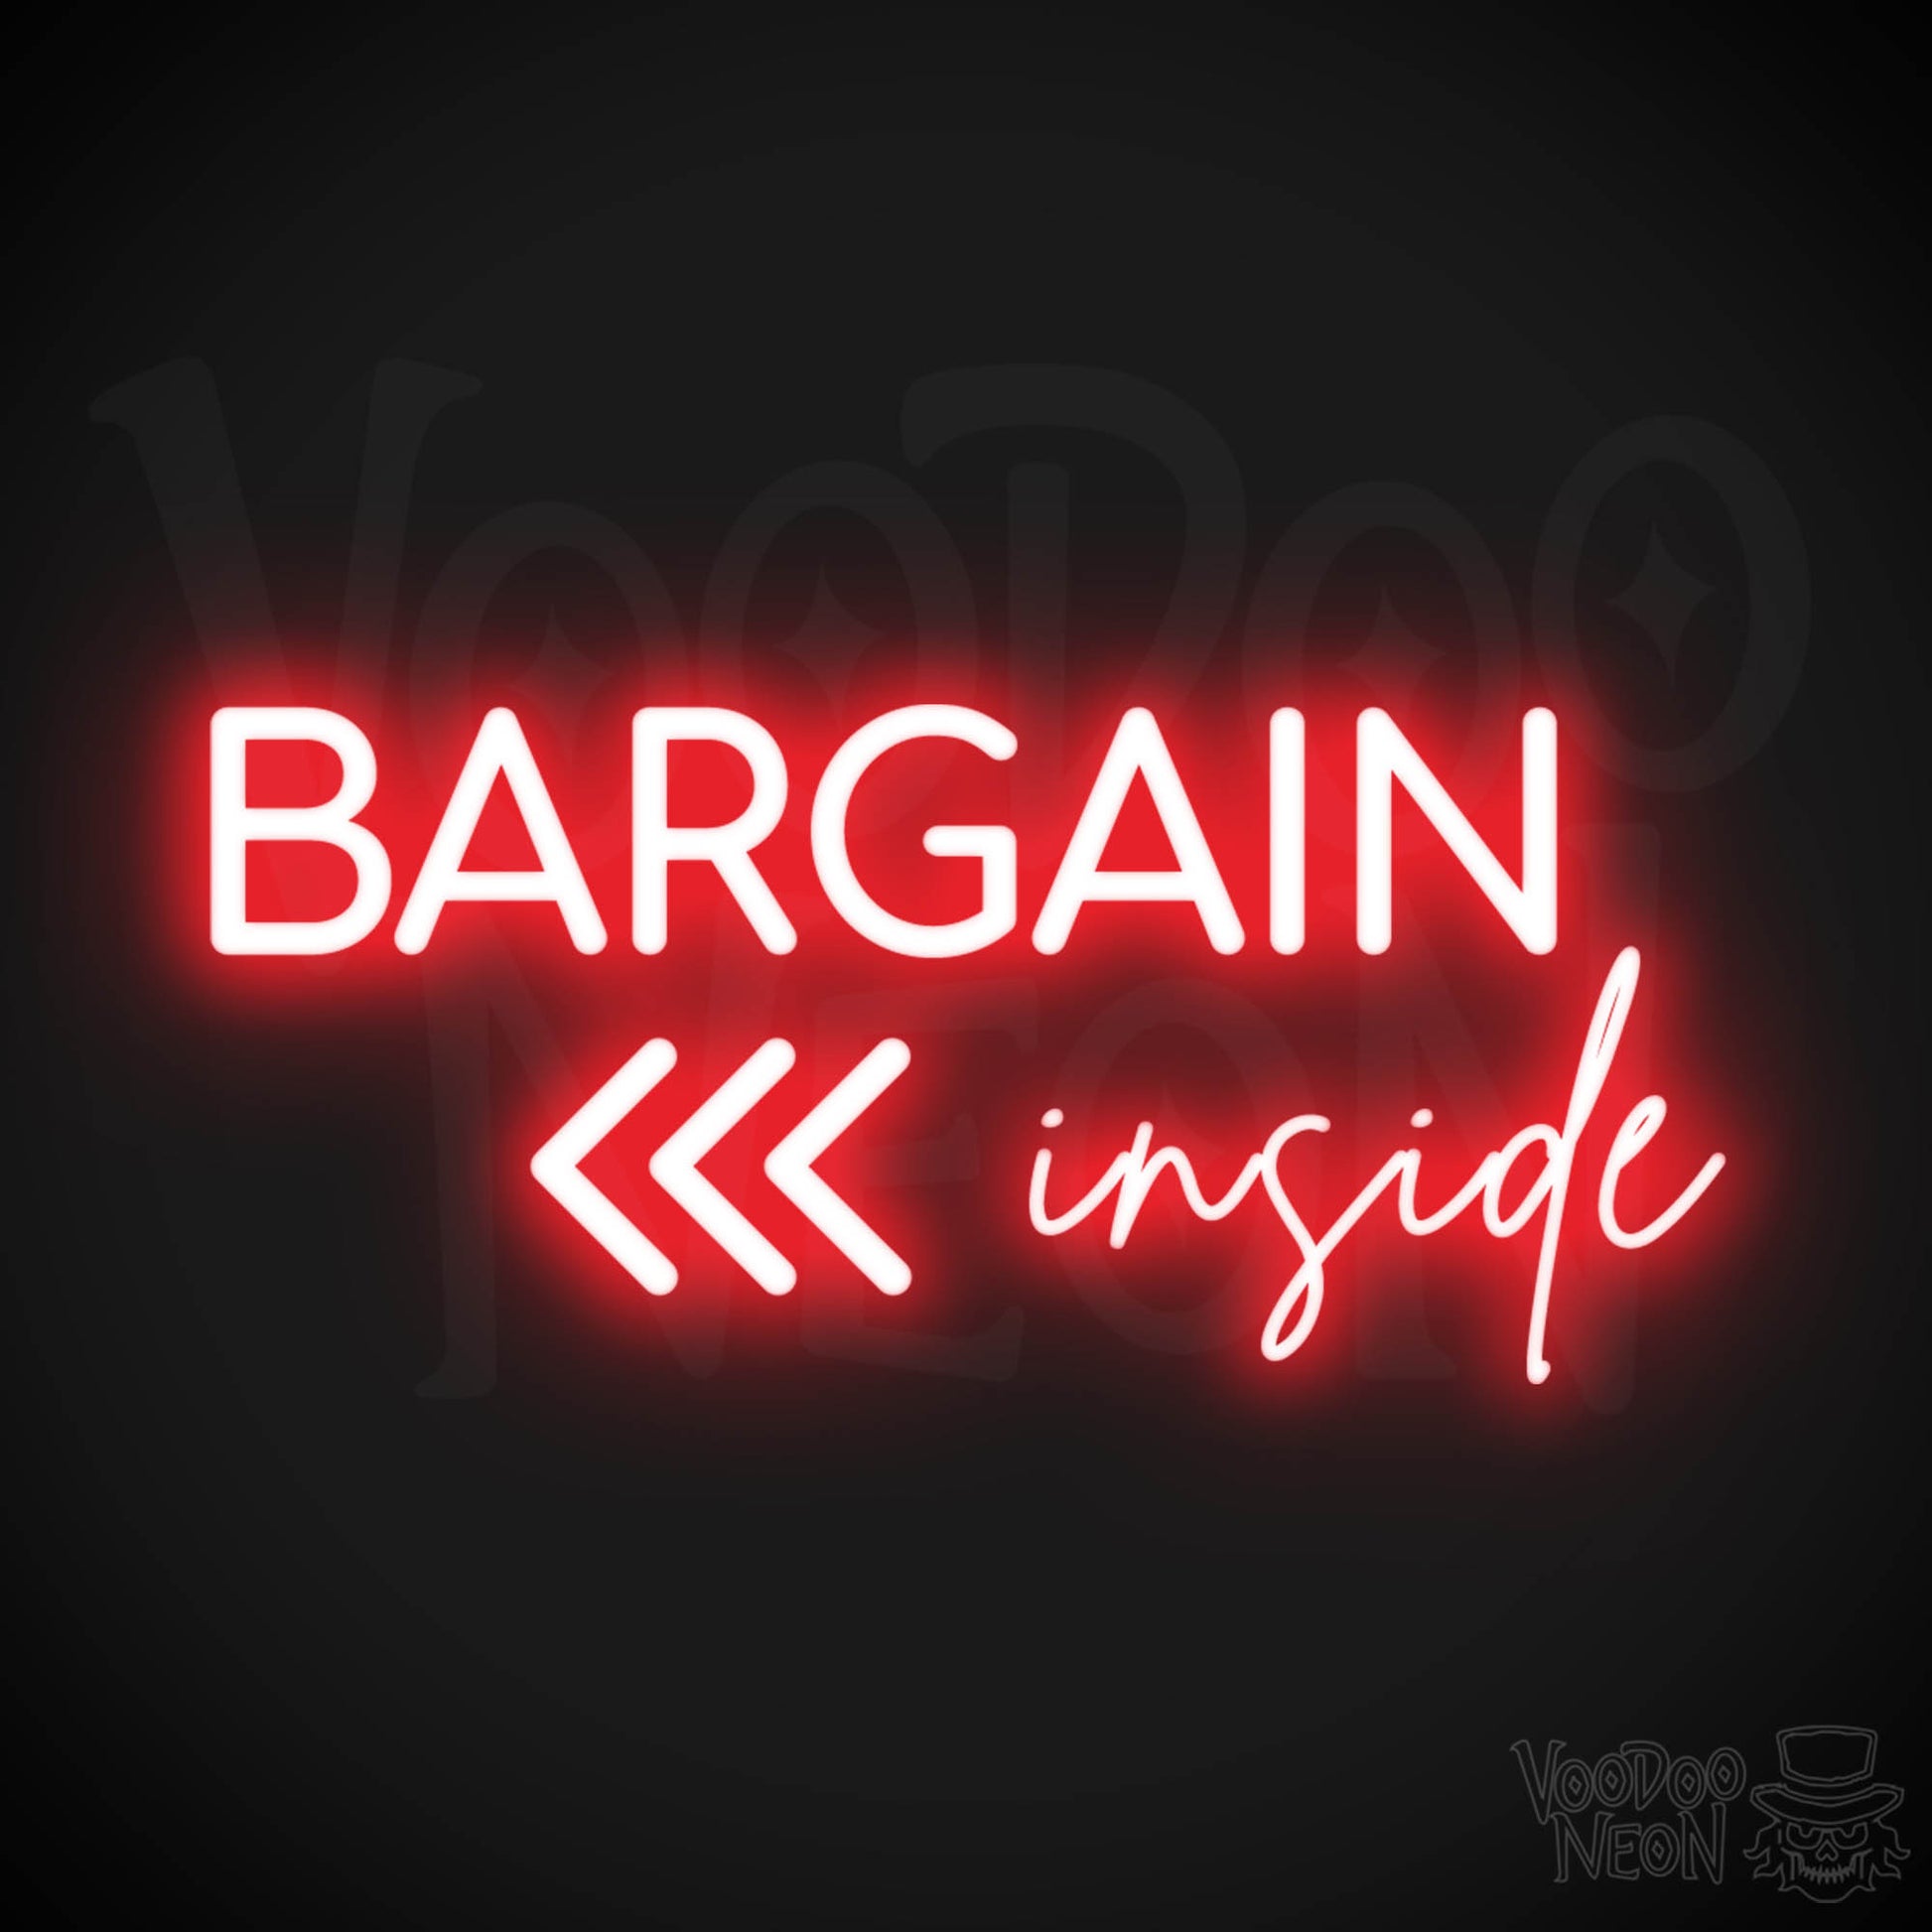 Bargains Inside Neon Sign - Neon Bargains Inside Shop Sign - Color Red